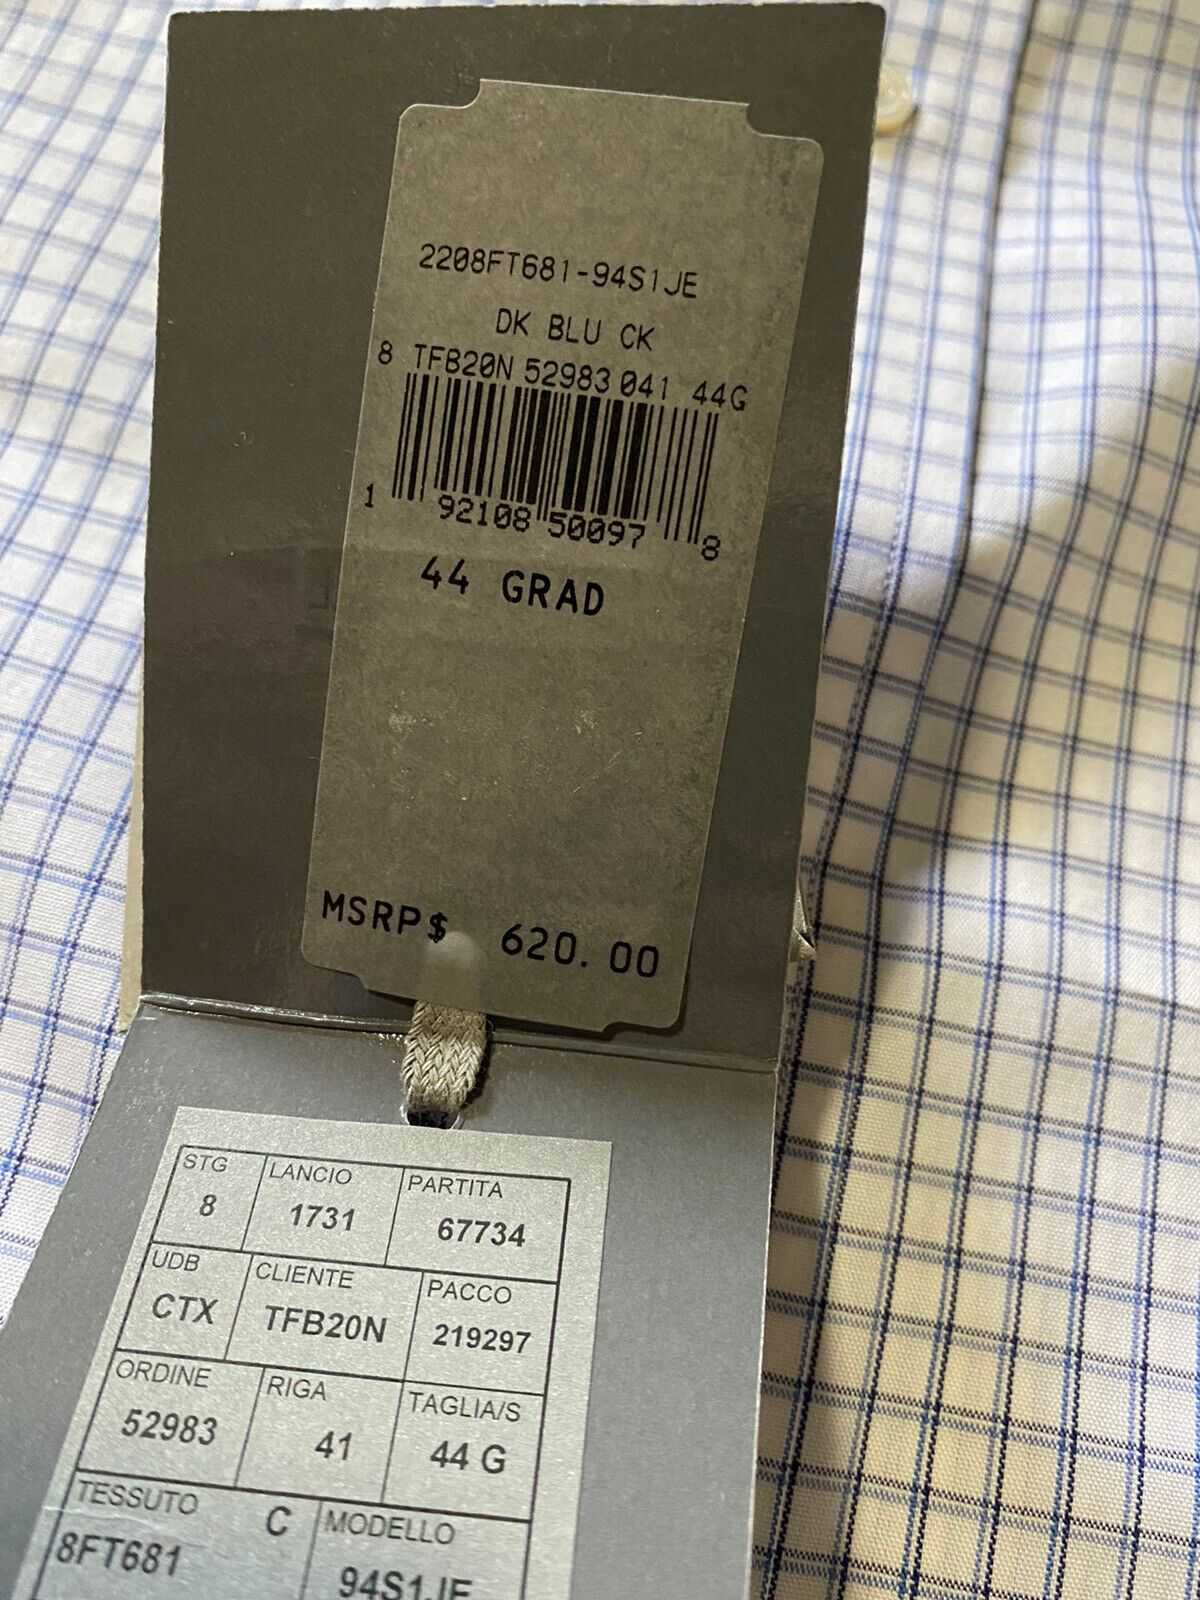 Новая мужская классическая рубашка TOM FORD, синяя/белая, $620, размер 17,5/44, Италия